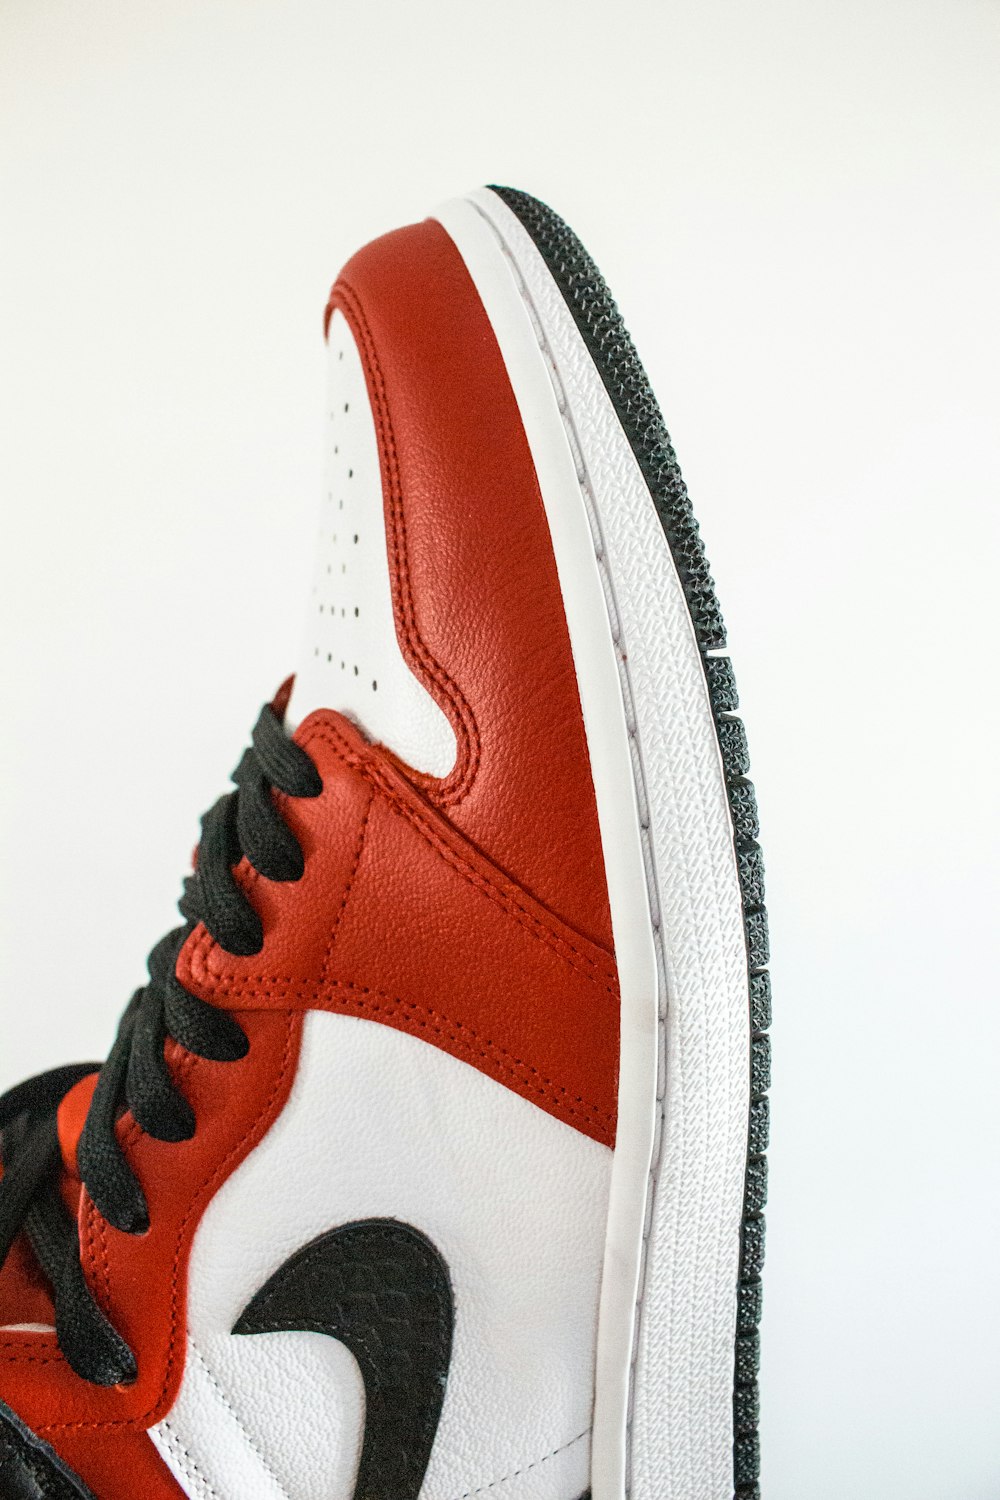 comprador Funcionar Infrarrojo Foto zapatillas nike rojas y blancas – Imagen Lyon gratis en Unsplash